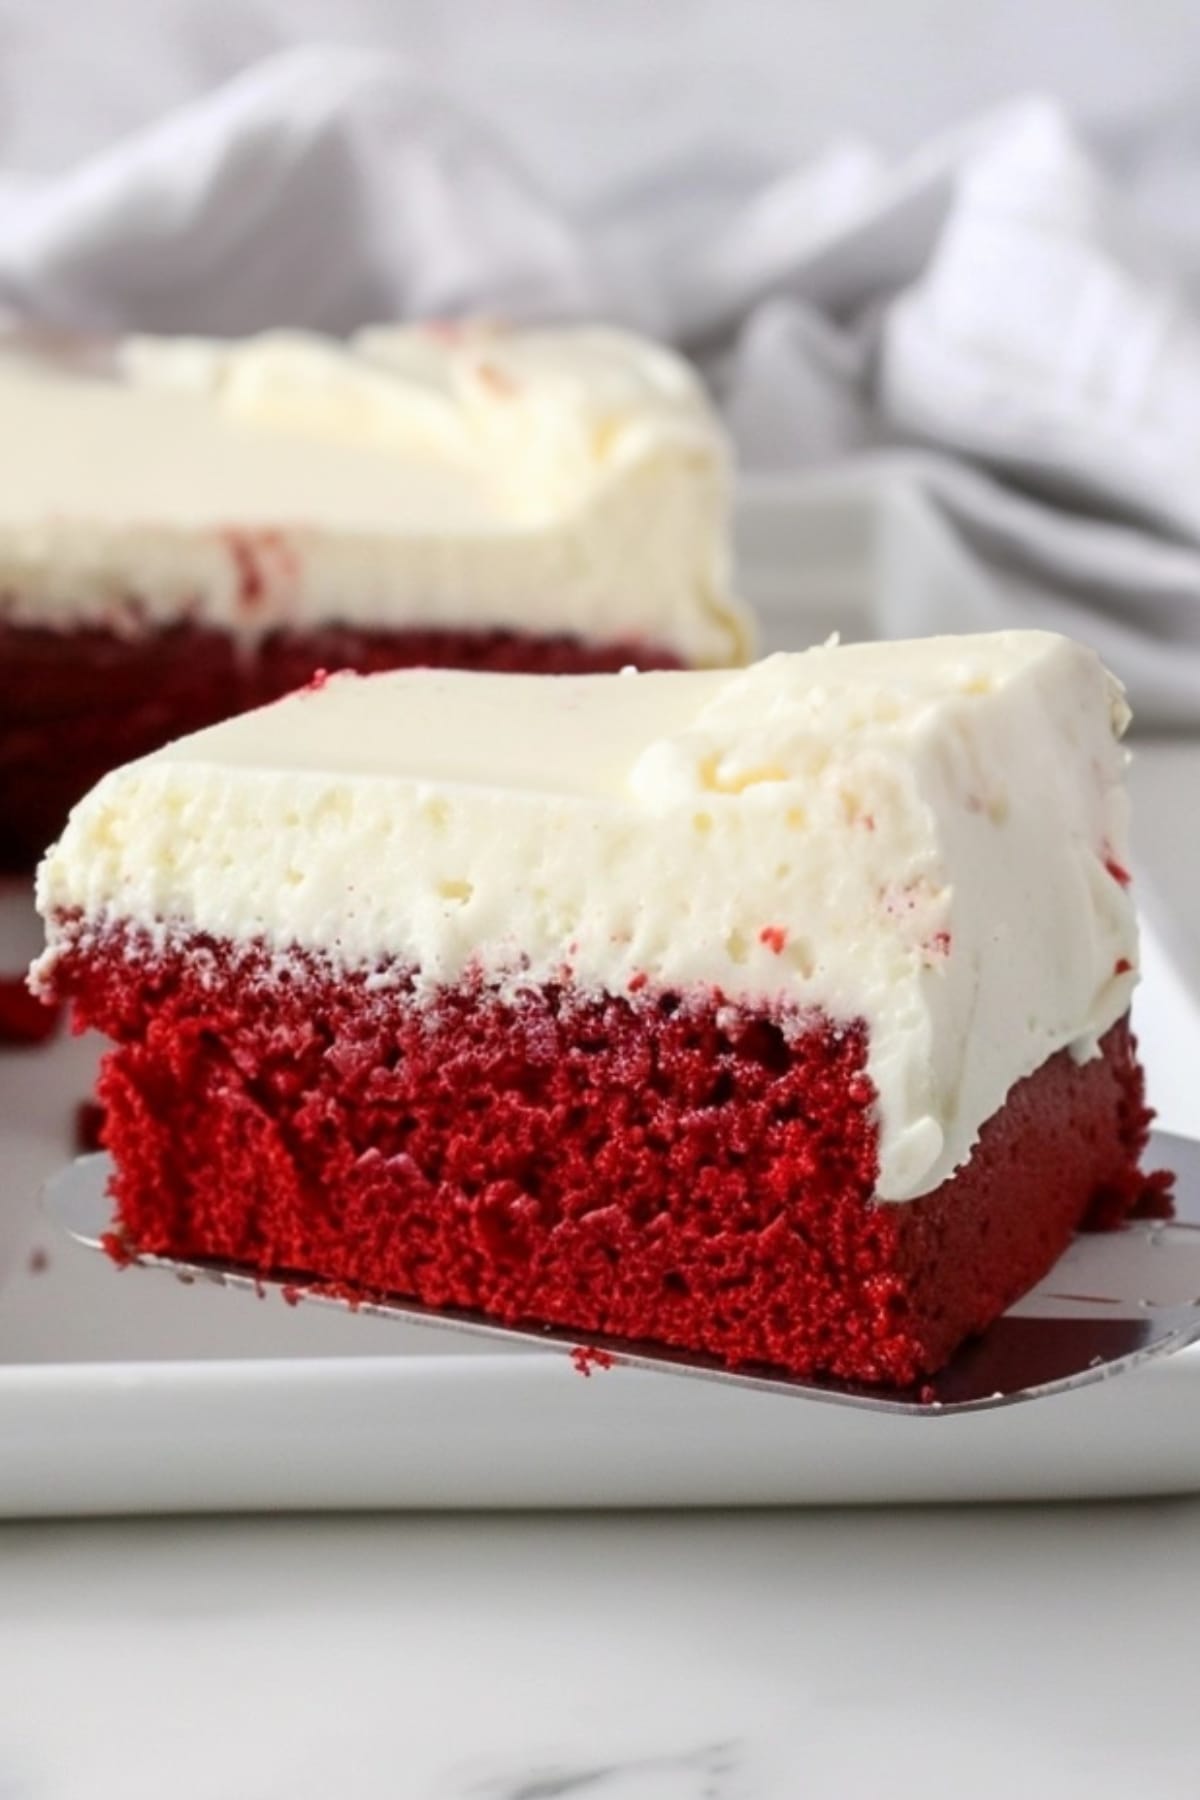 Cake ladle scooping a square slice of red velvet cake sheet.